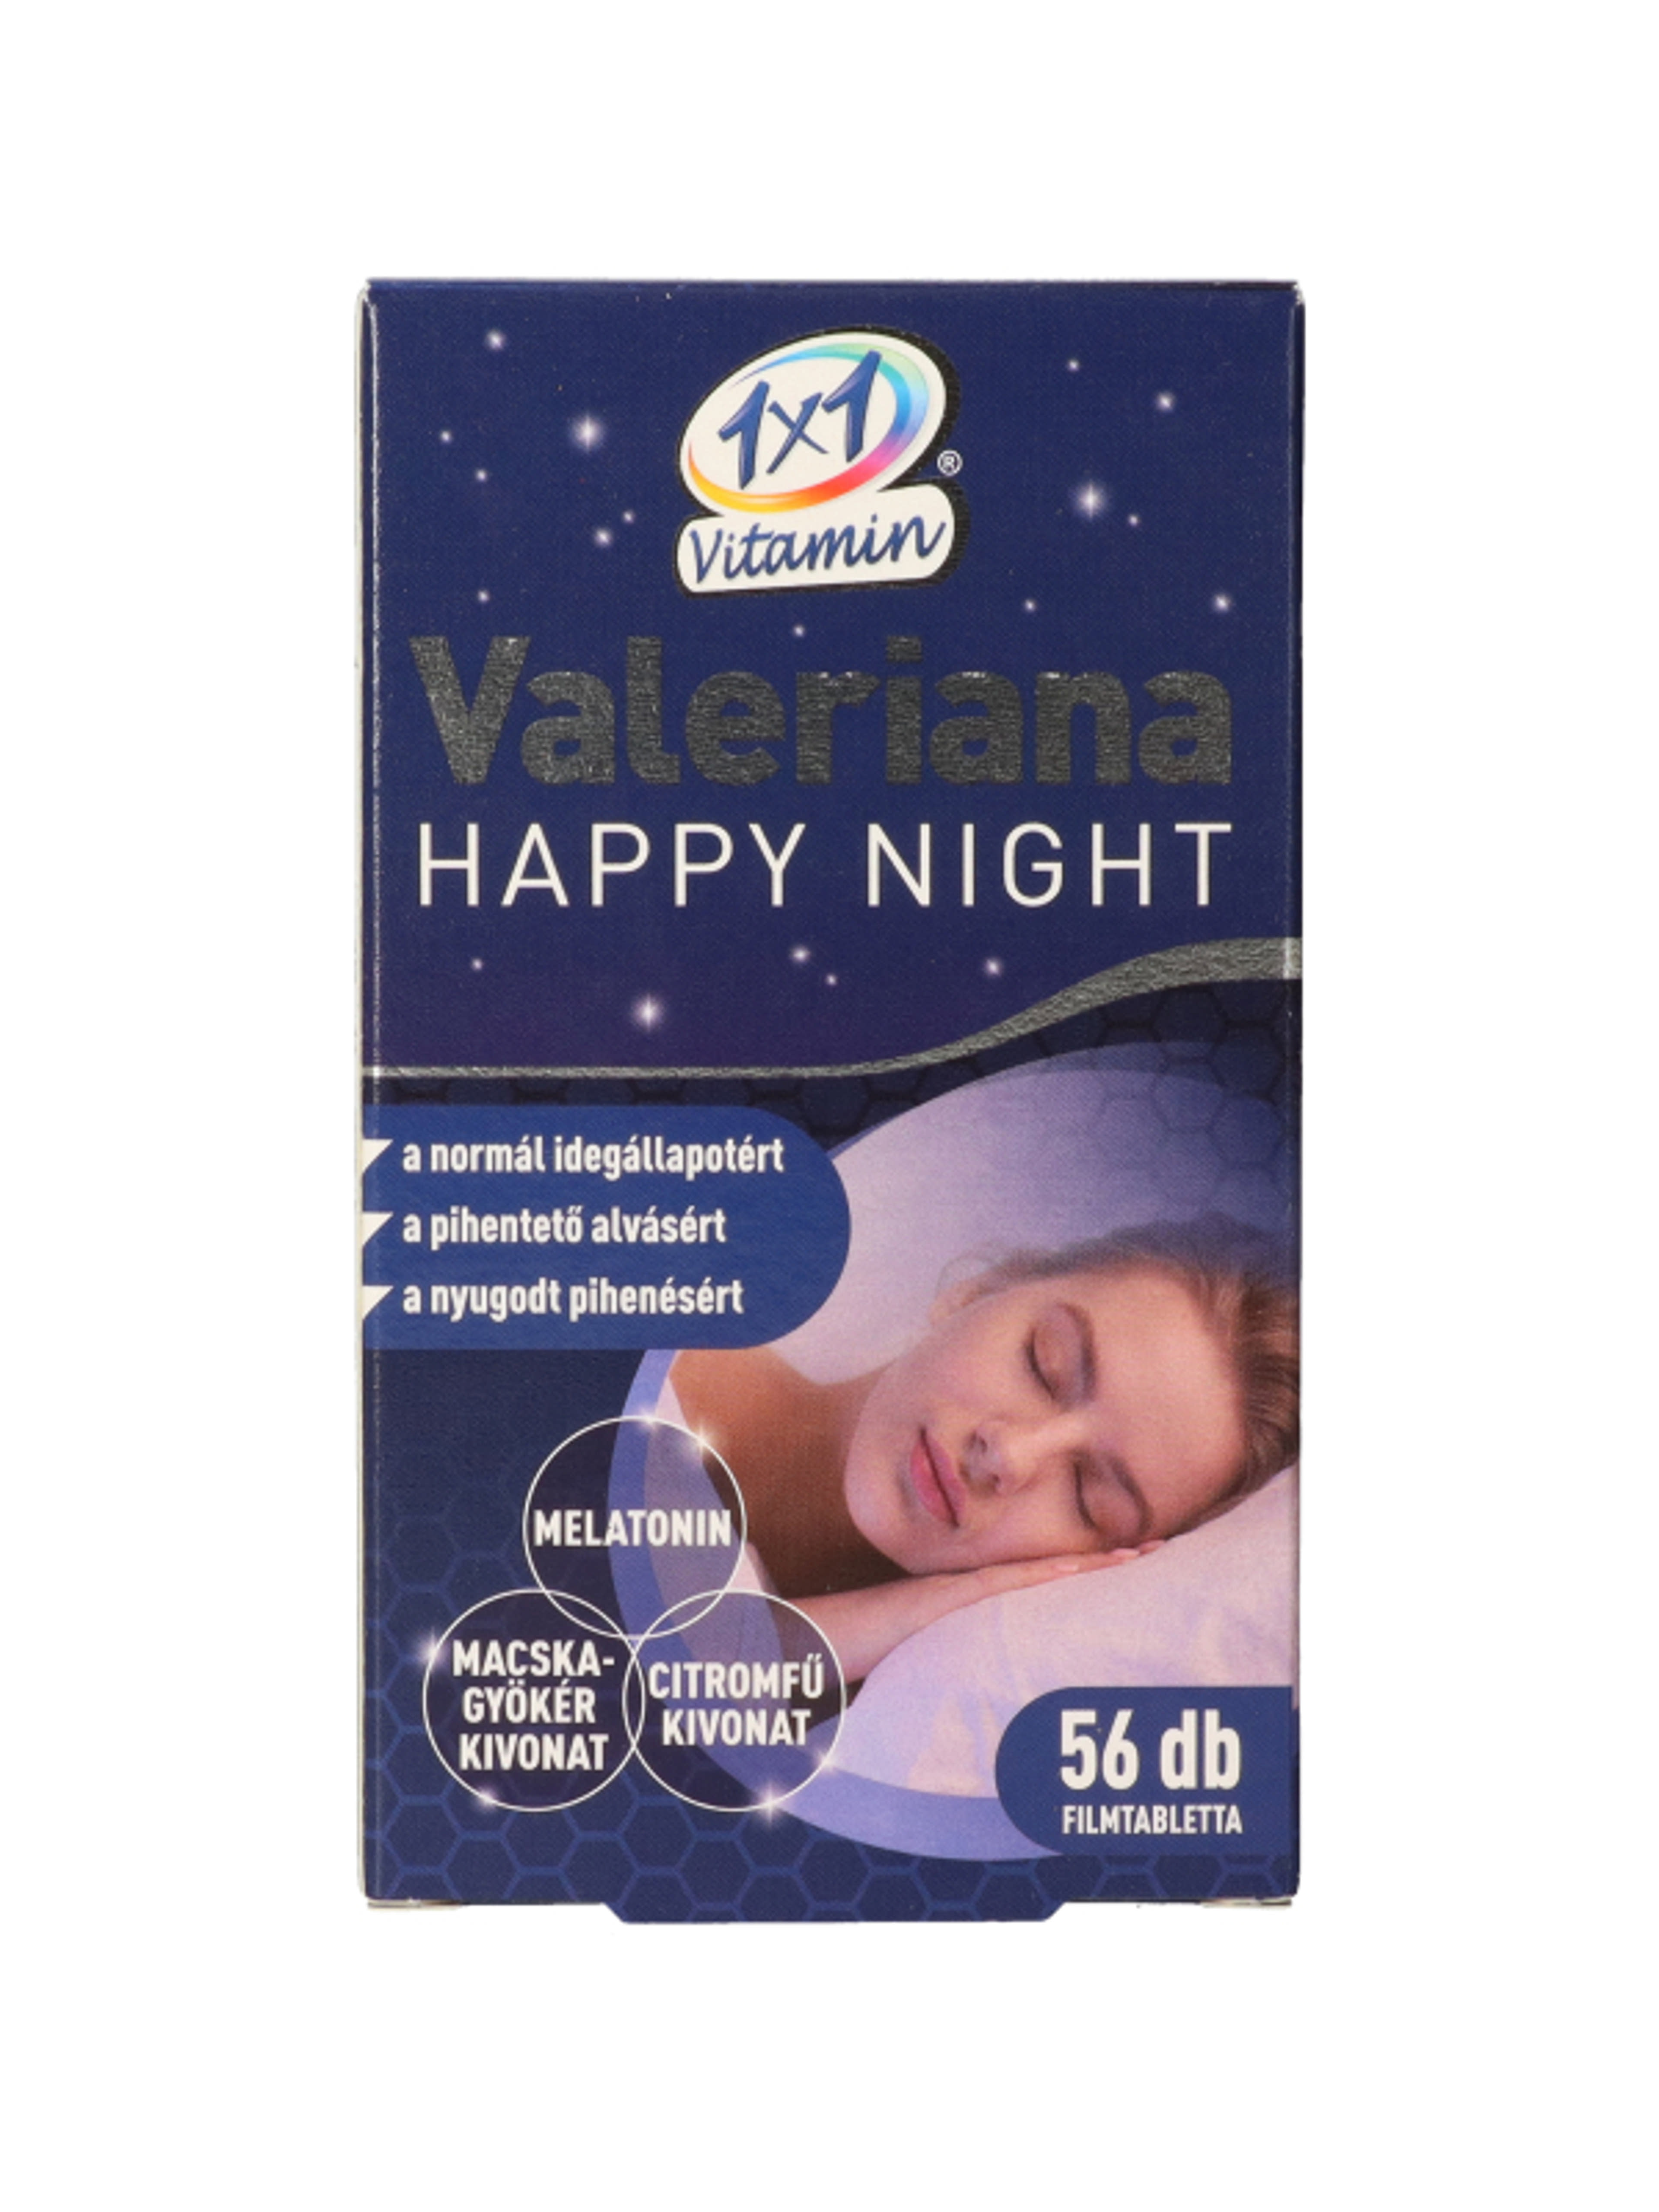 1x1 Vitamin Valeriana Happy Night filmtabletta - 56 db-1